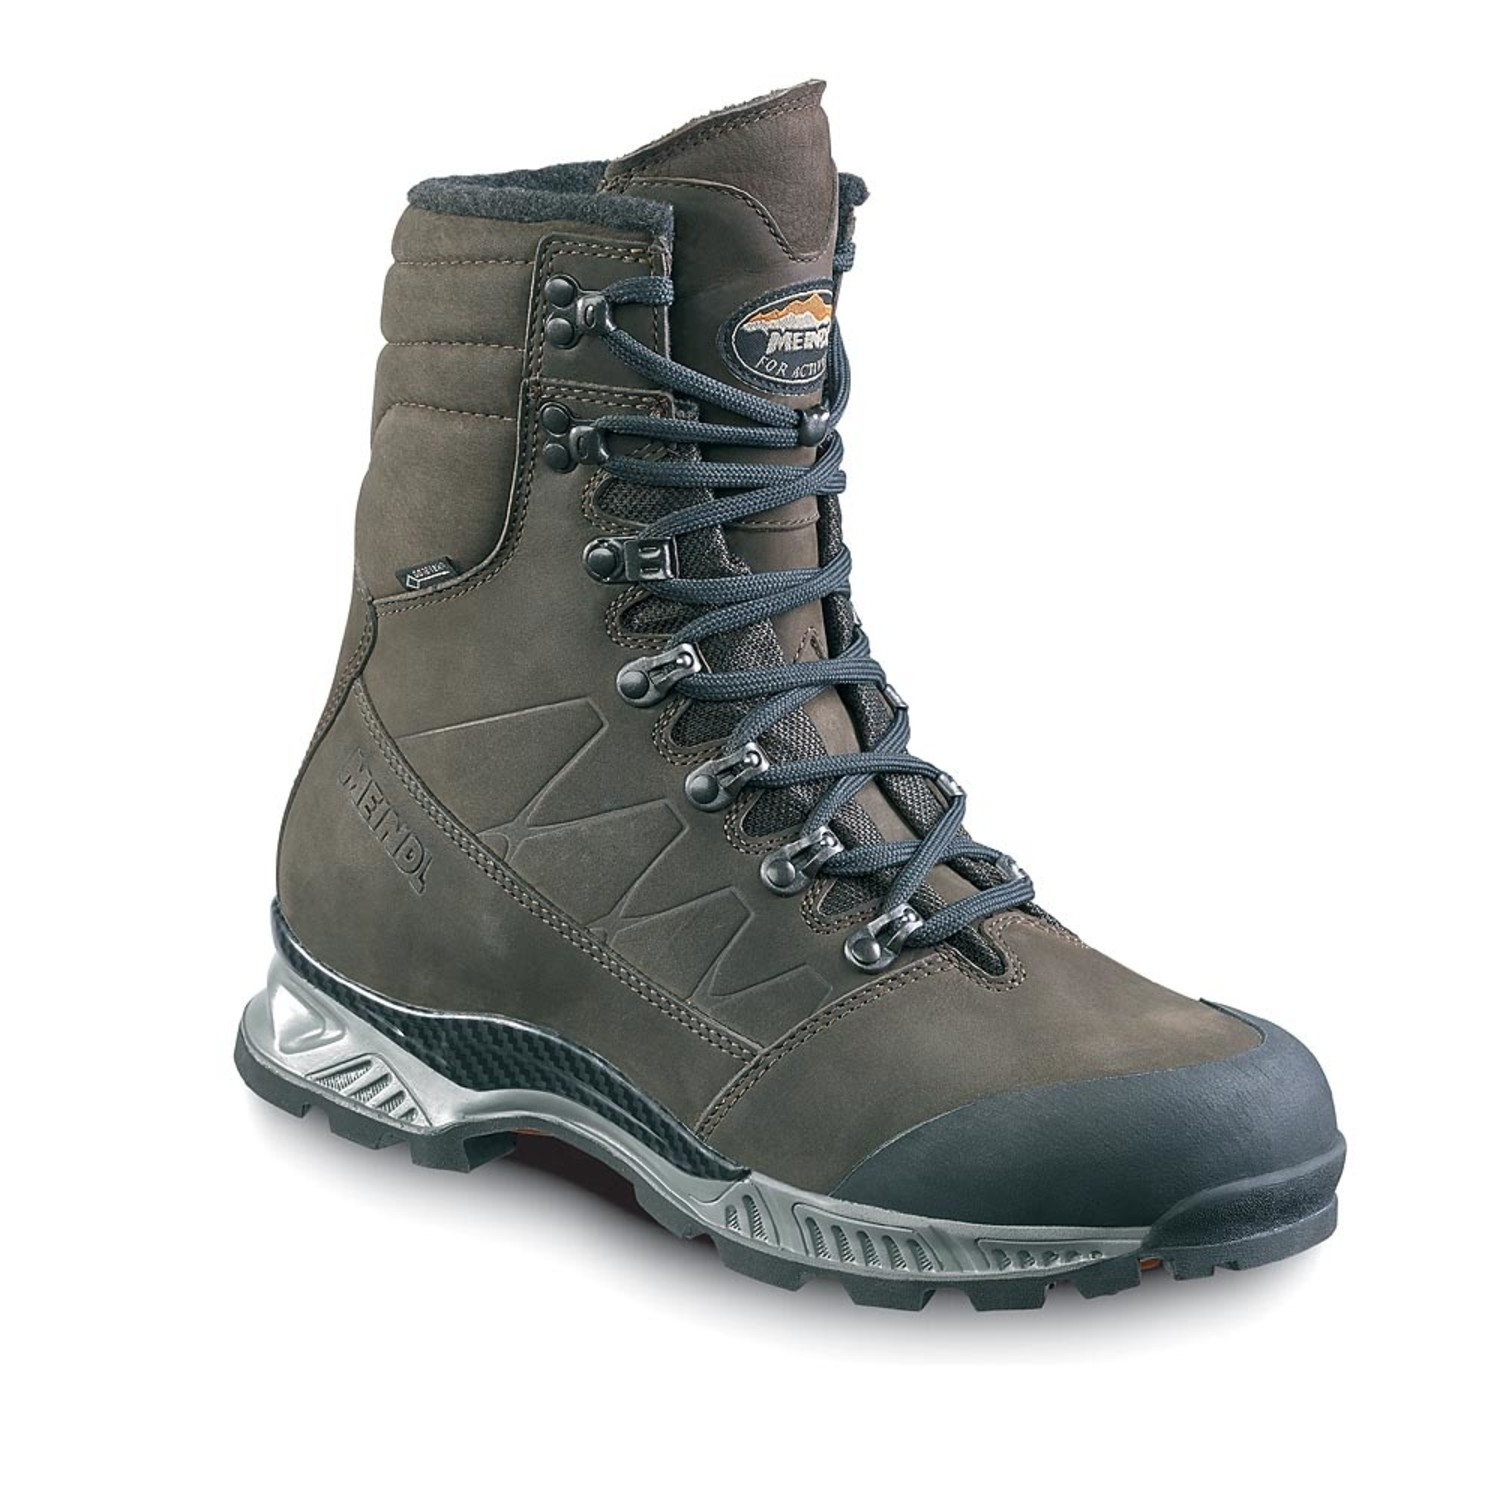 Zeep Inschrijven cursief Meindl Narvik GTX Winter Boots - Outdoor Essentials